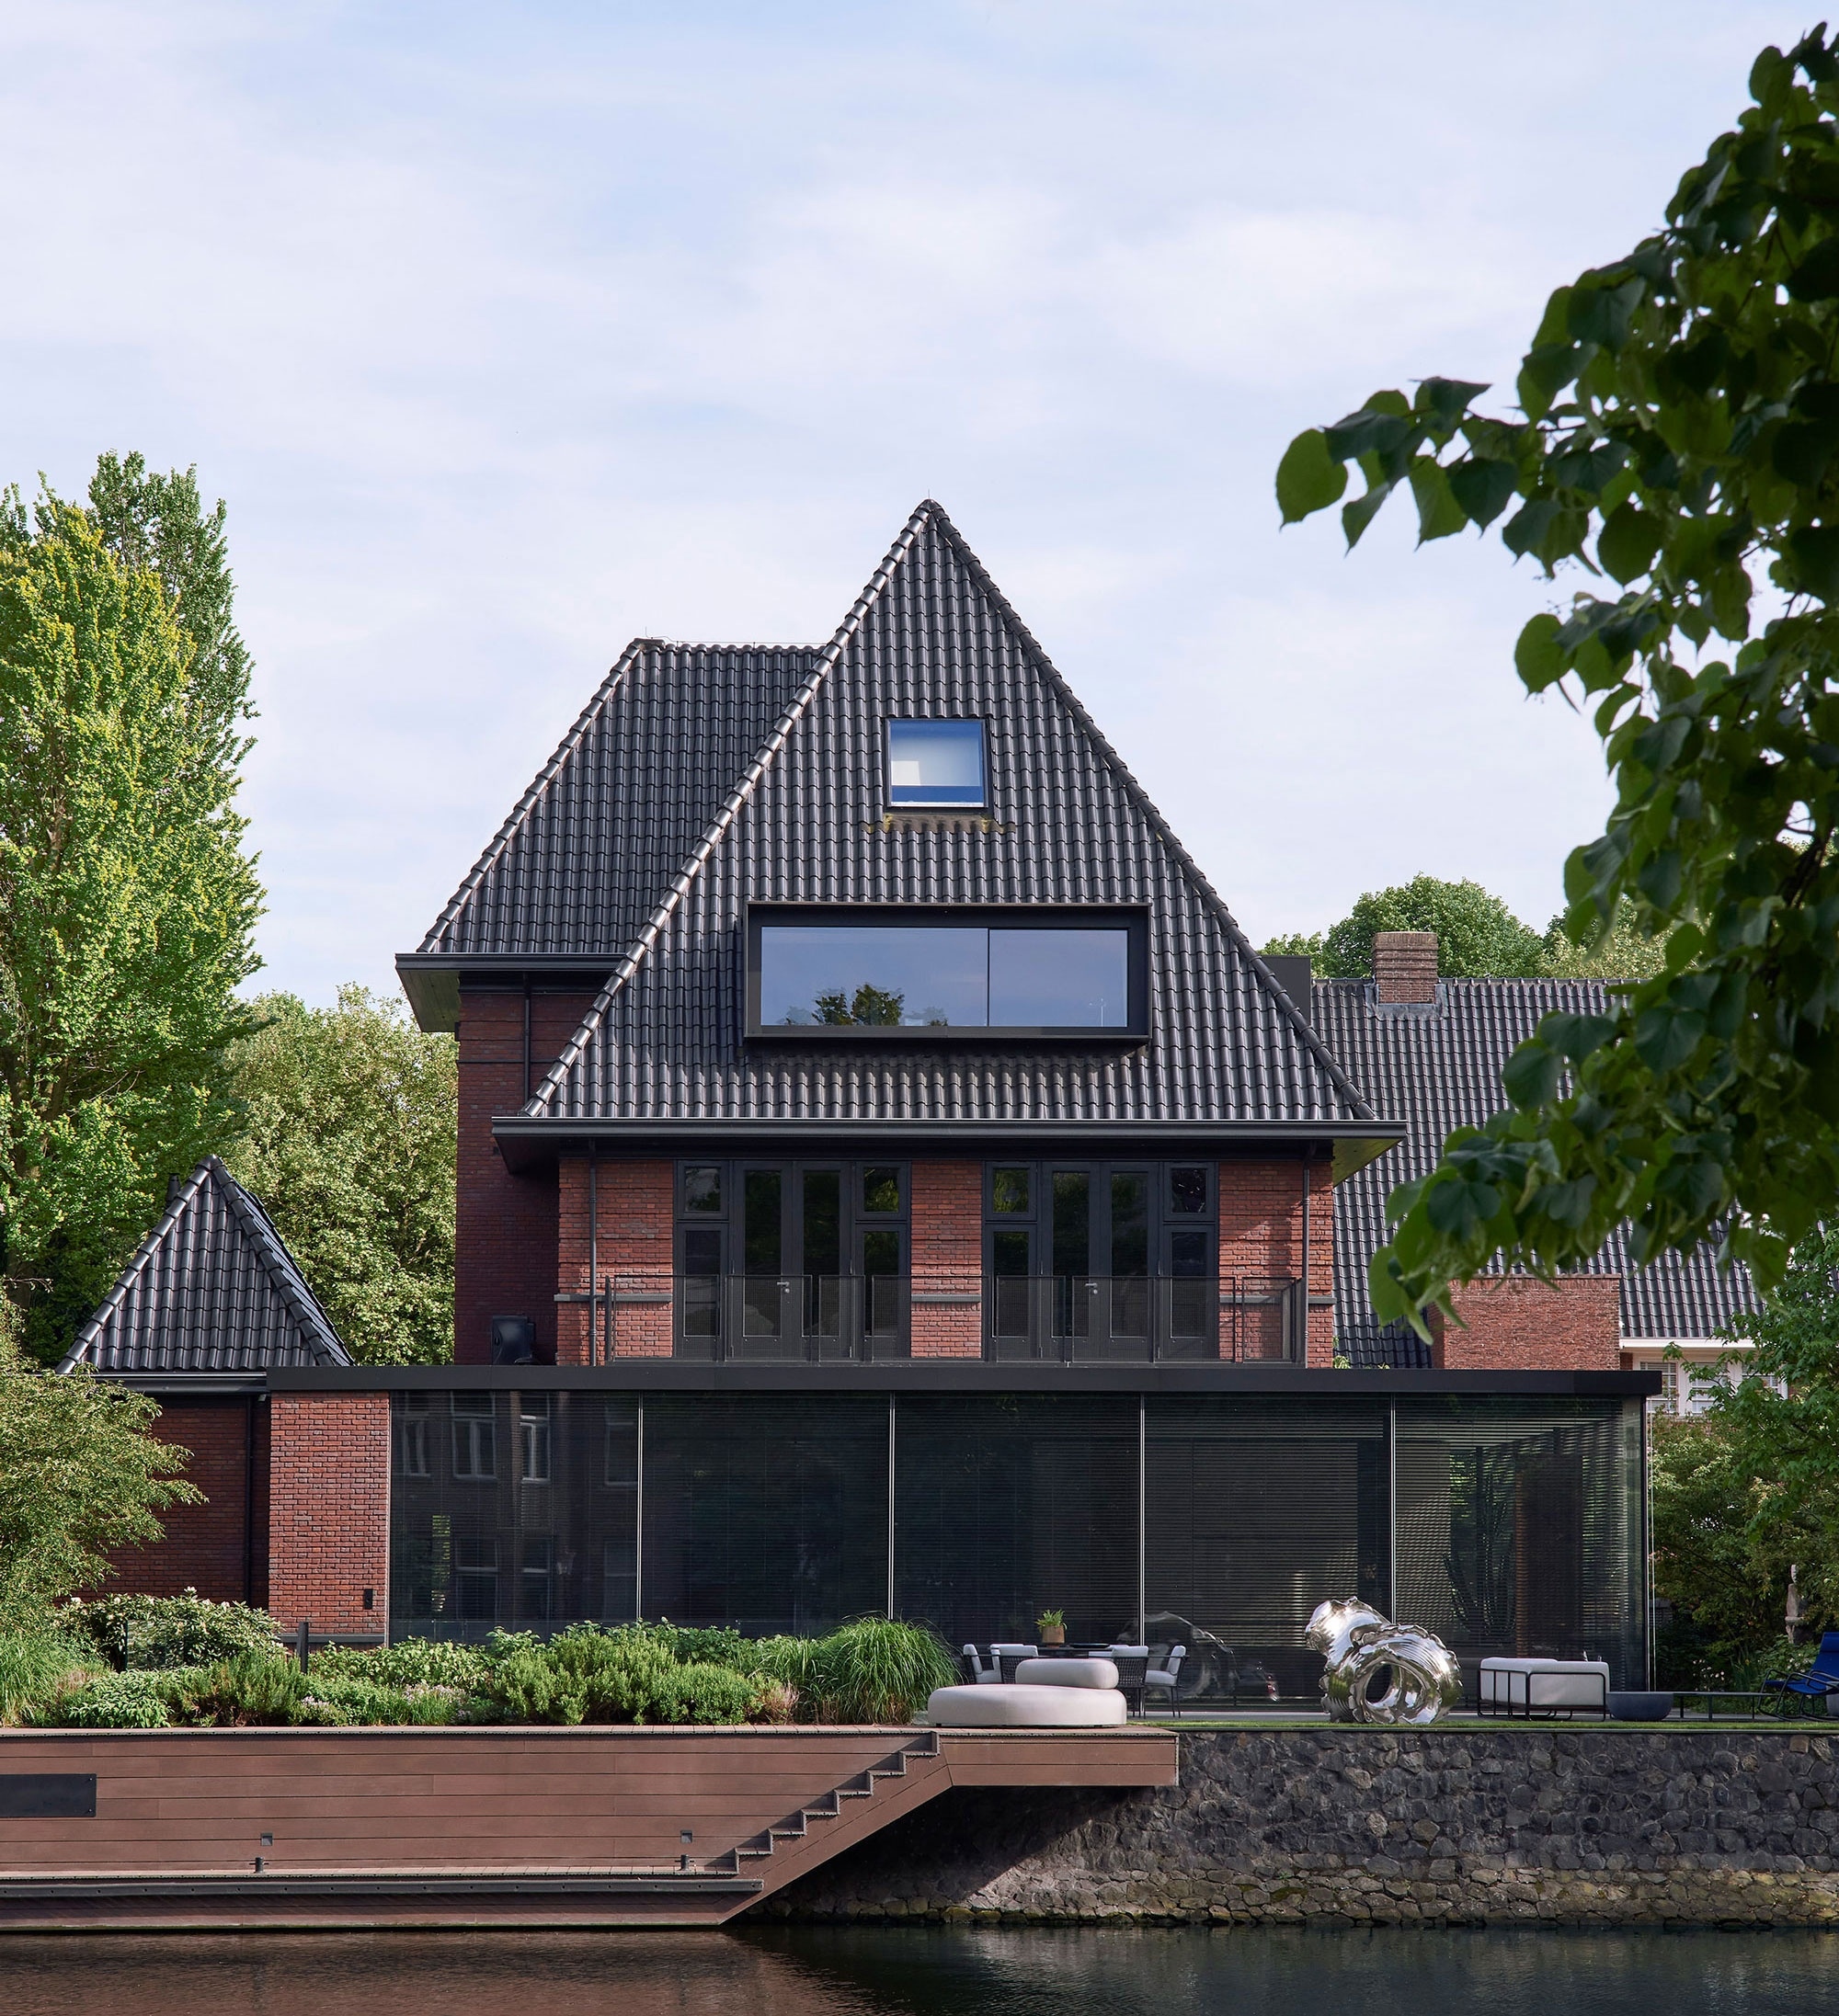  Holland villa, 2020